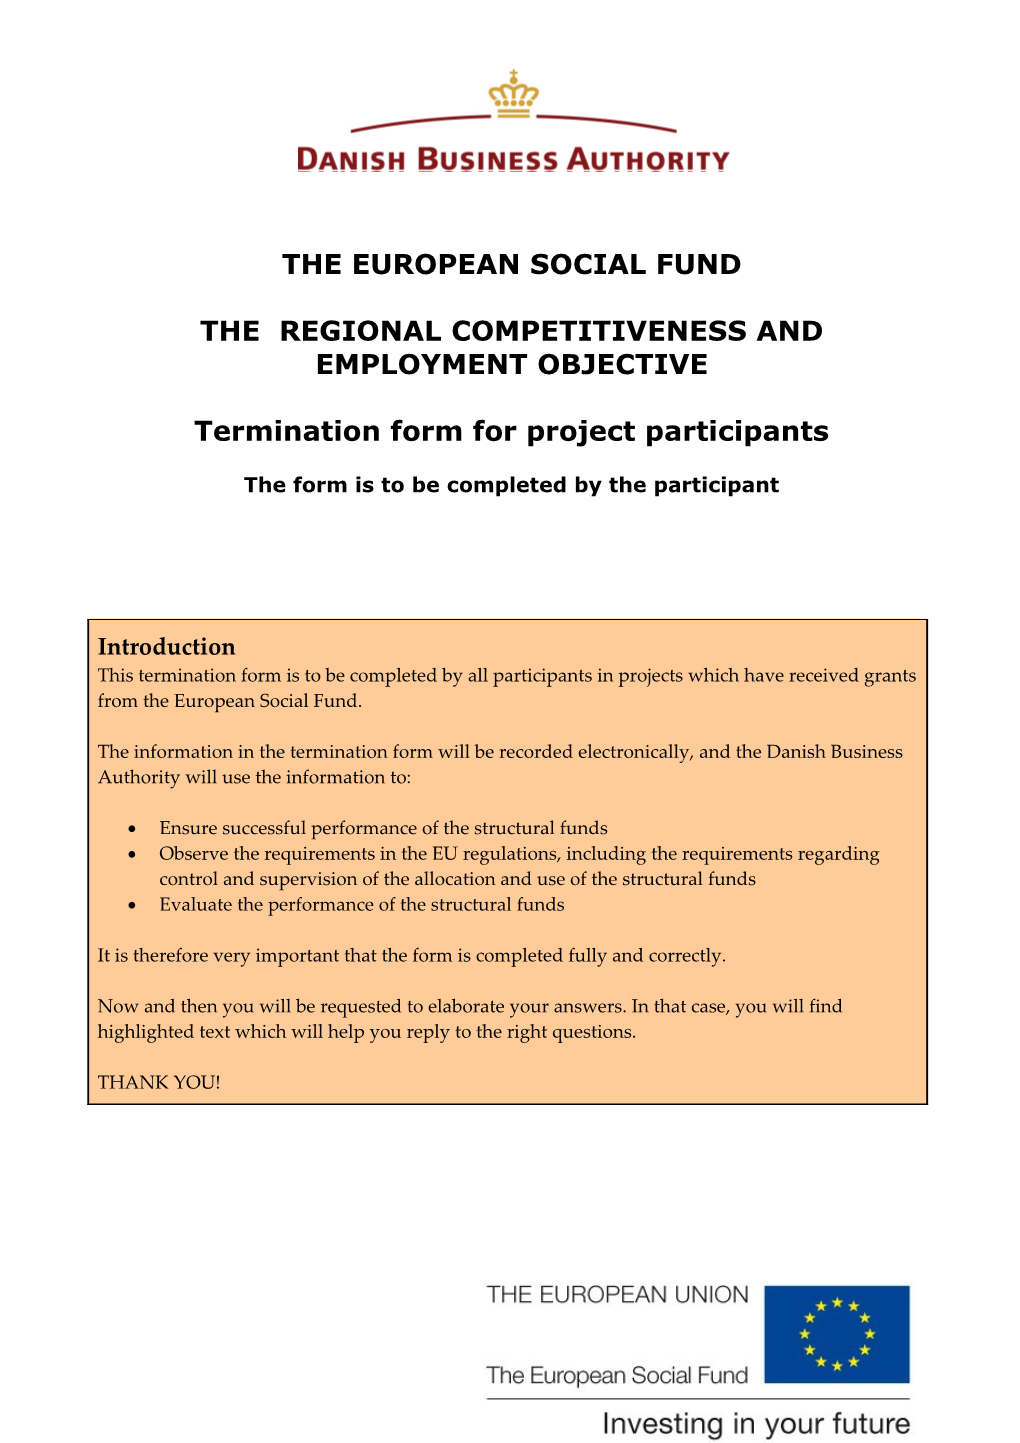 The European Social Fund